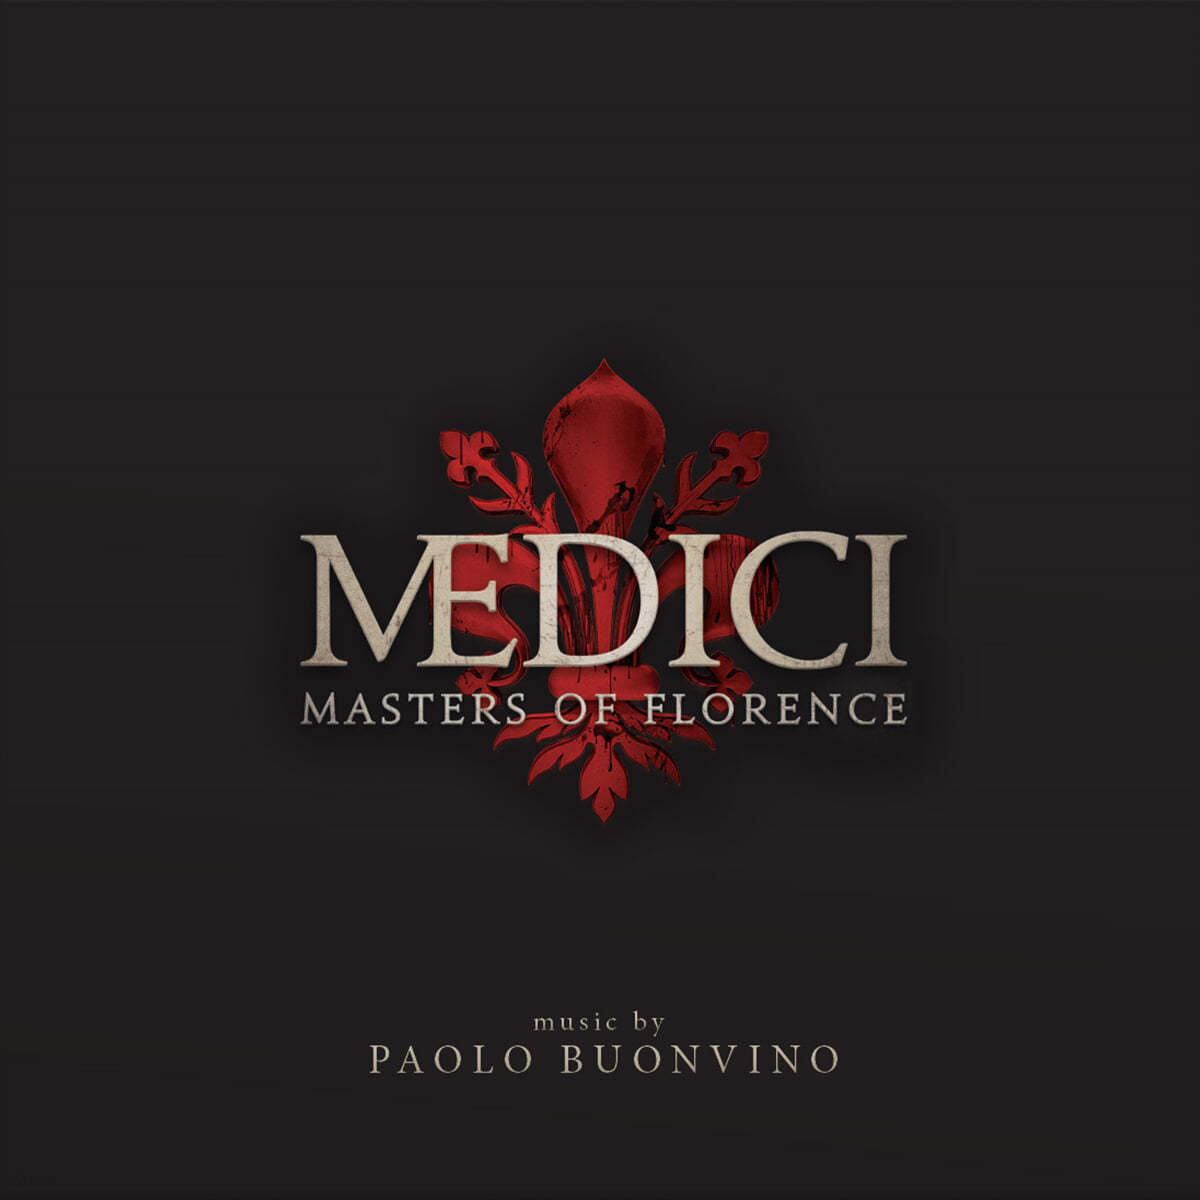 &#39;메디치: 마스터즈 오브 플로렌스&#39; 넷플릭스 드라마 음악 (MEDICI: Masters of Florence OST) [LP] 